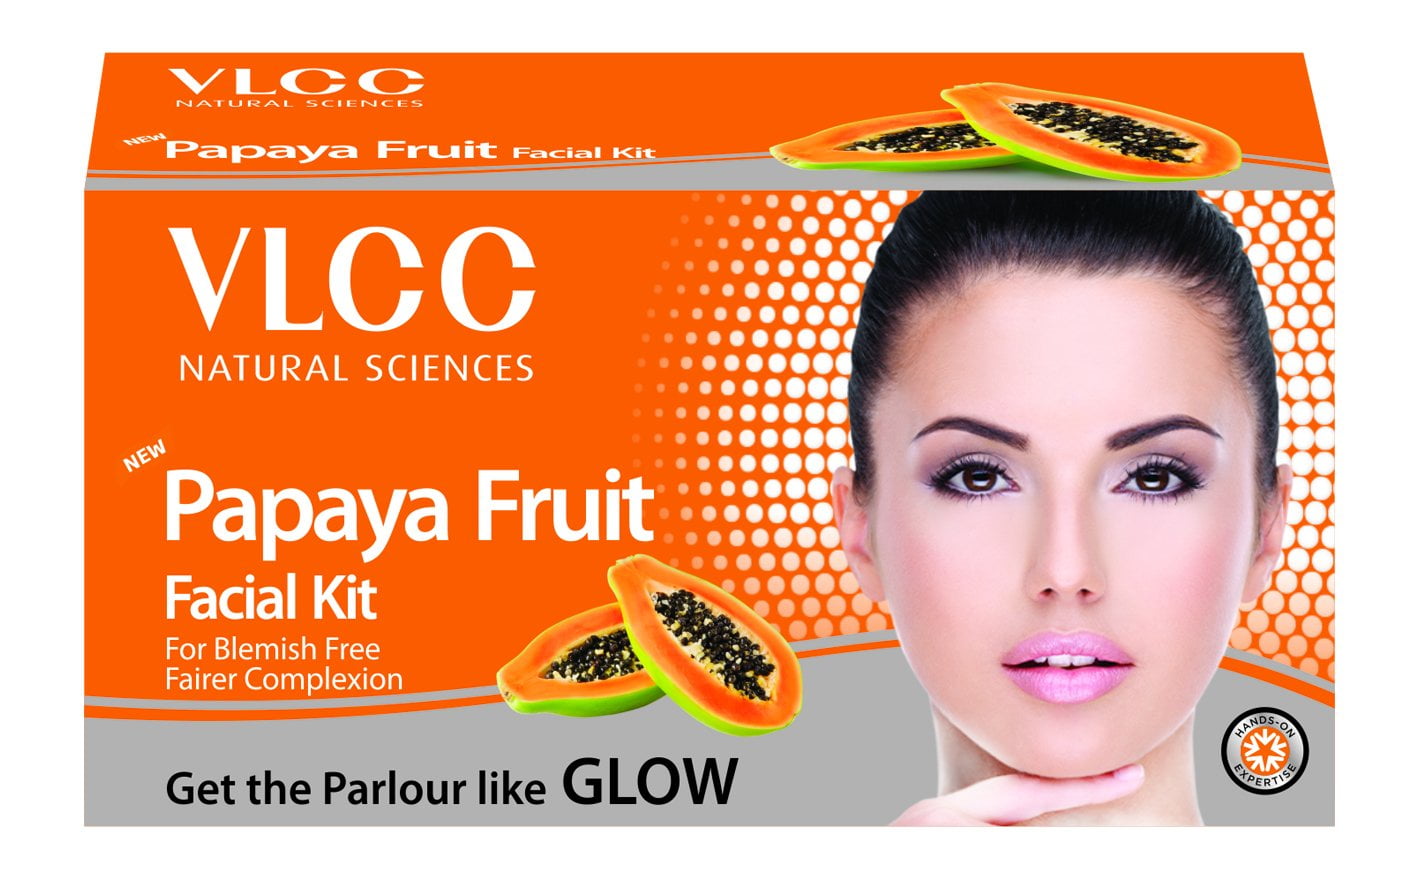 1418px x 878px - VLCC Papaya Fruit Facial Kit, 60g - Walmart.com